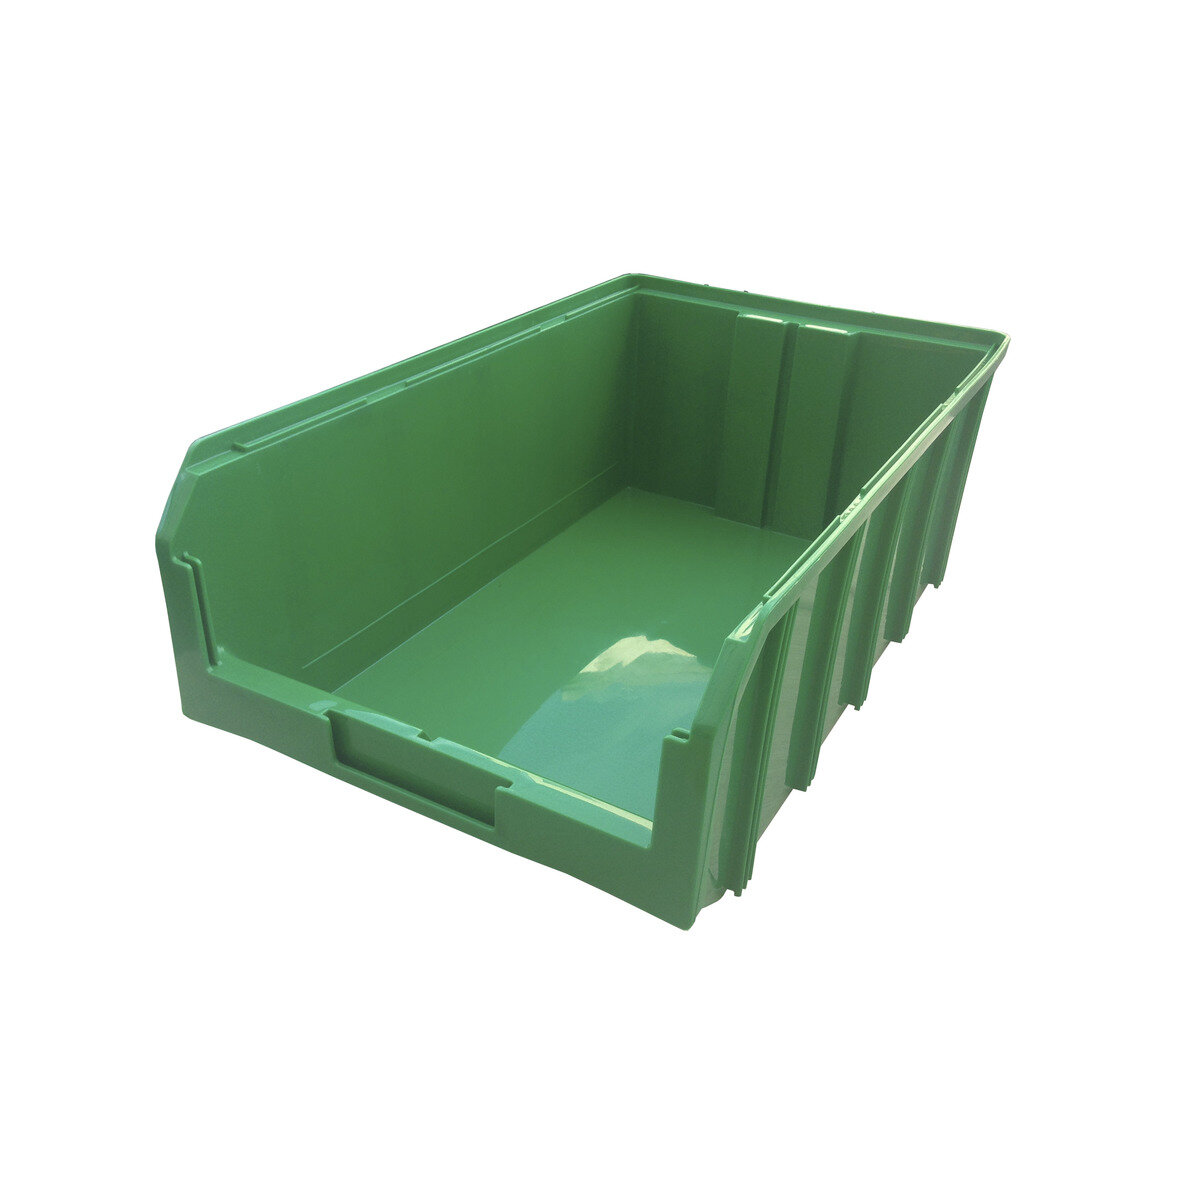 Пластиковый ящик Стелла-техник V-4-зеленый 502х305х184мм 20 литров